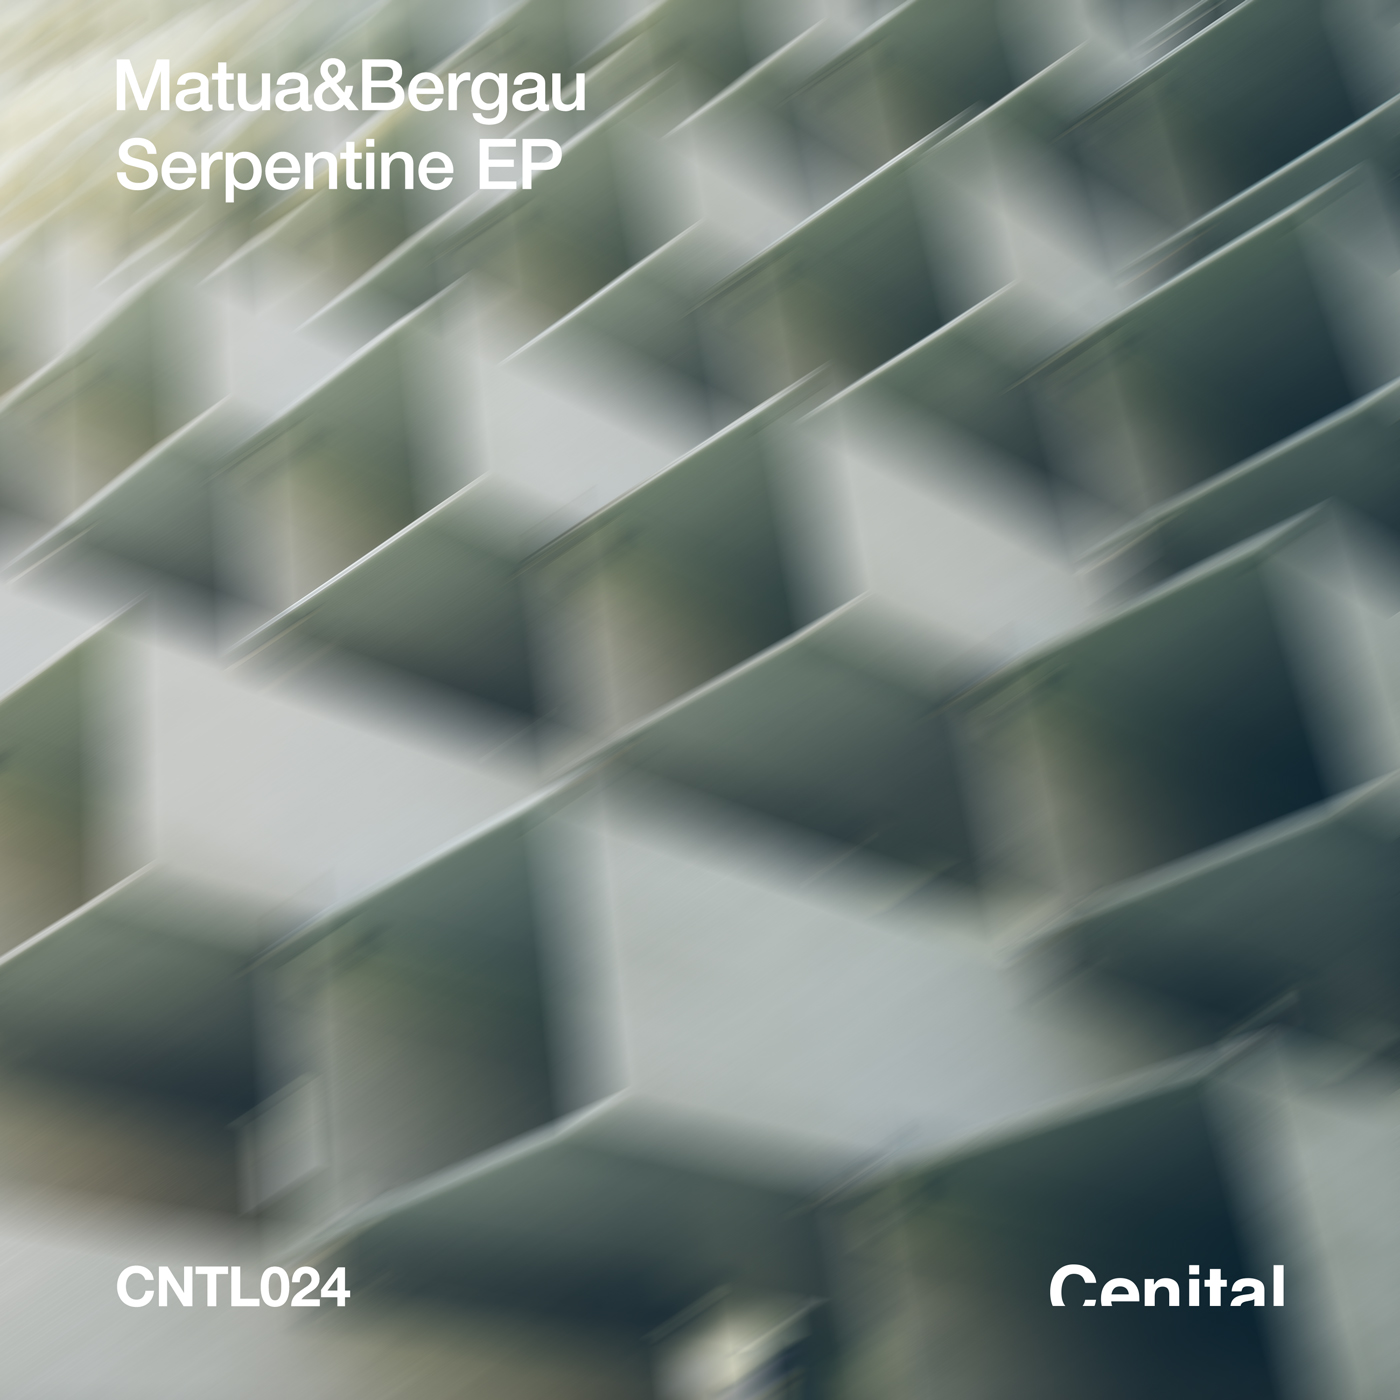 Matua&Bergau – Serpentine EP [CNTL024]